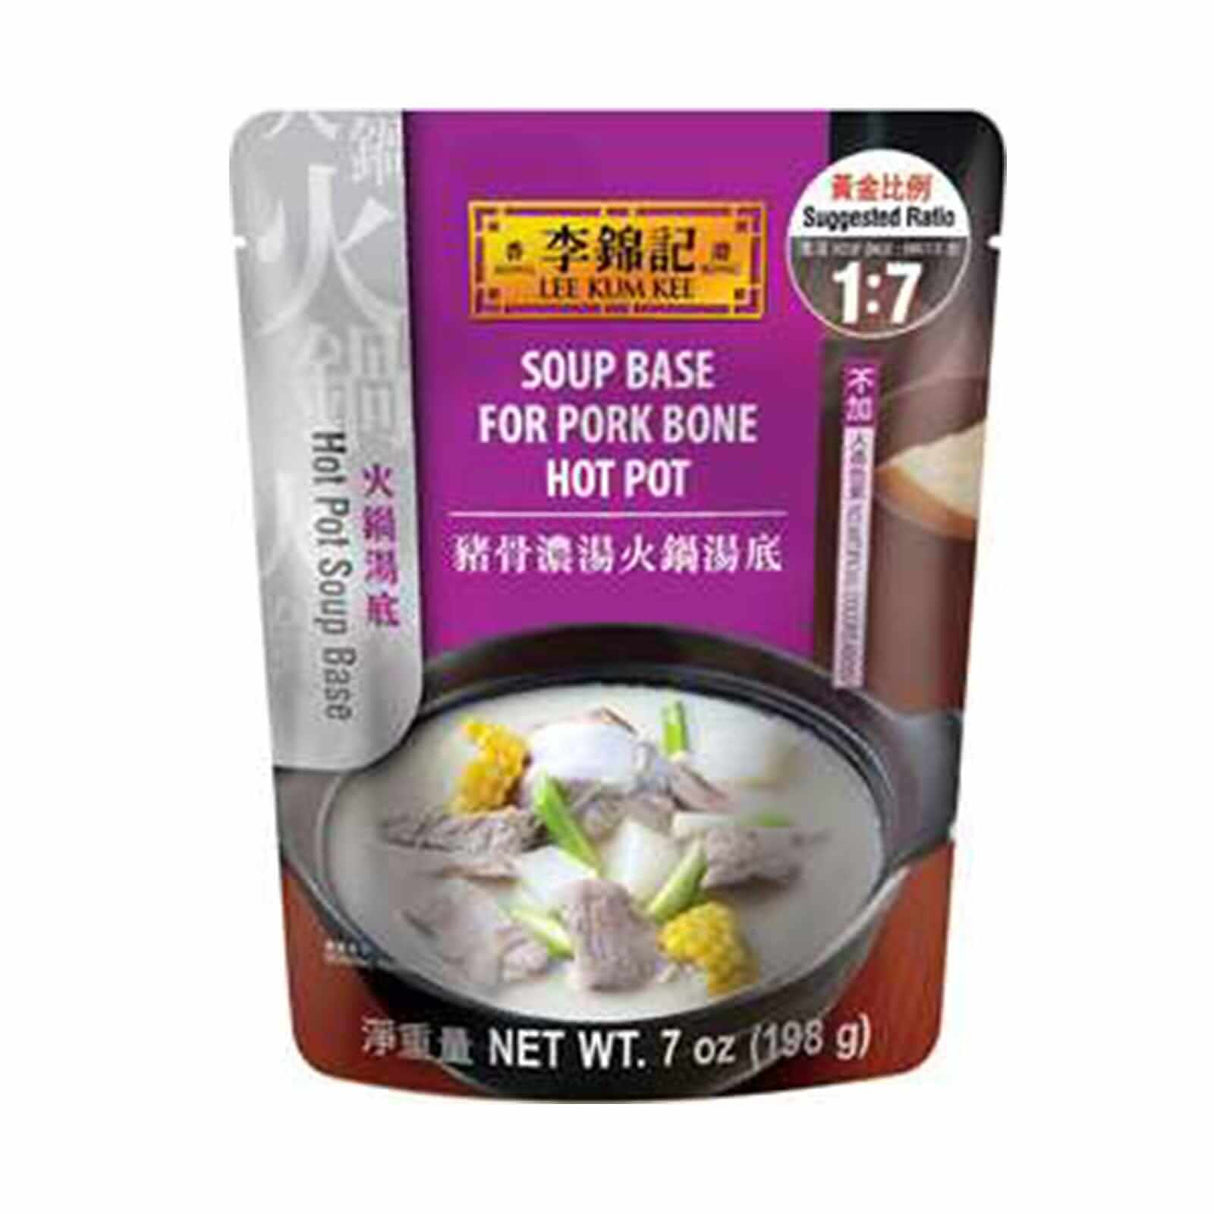 Lee Kum Kee Soup Base For Pork Bone Hot Pot